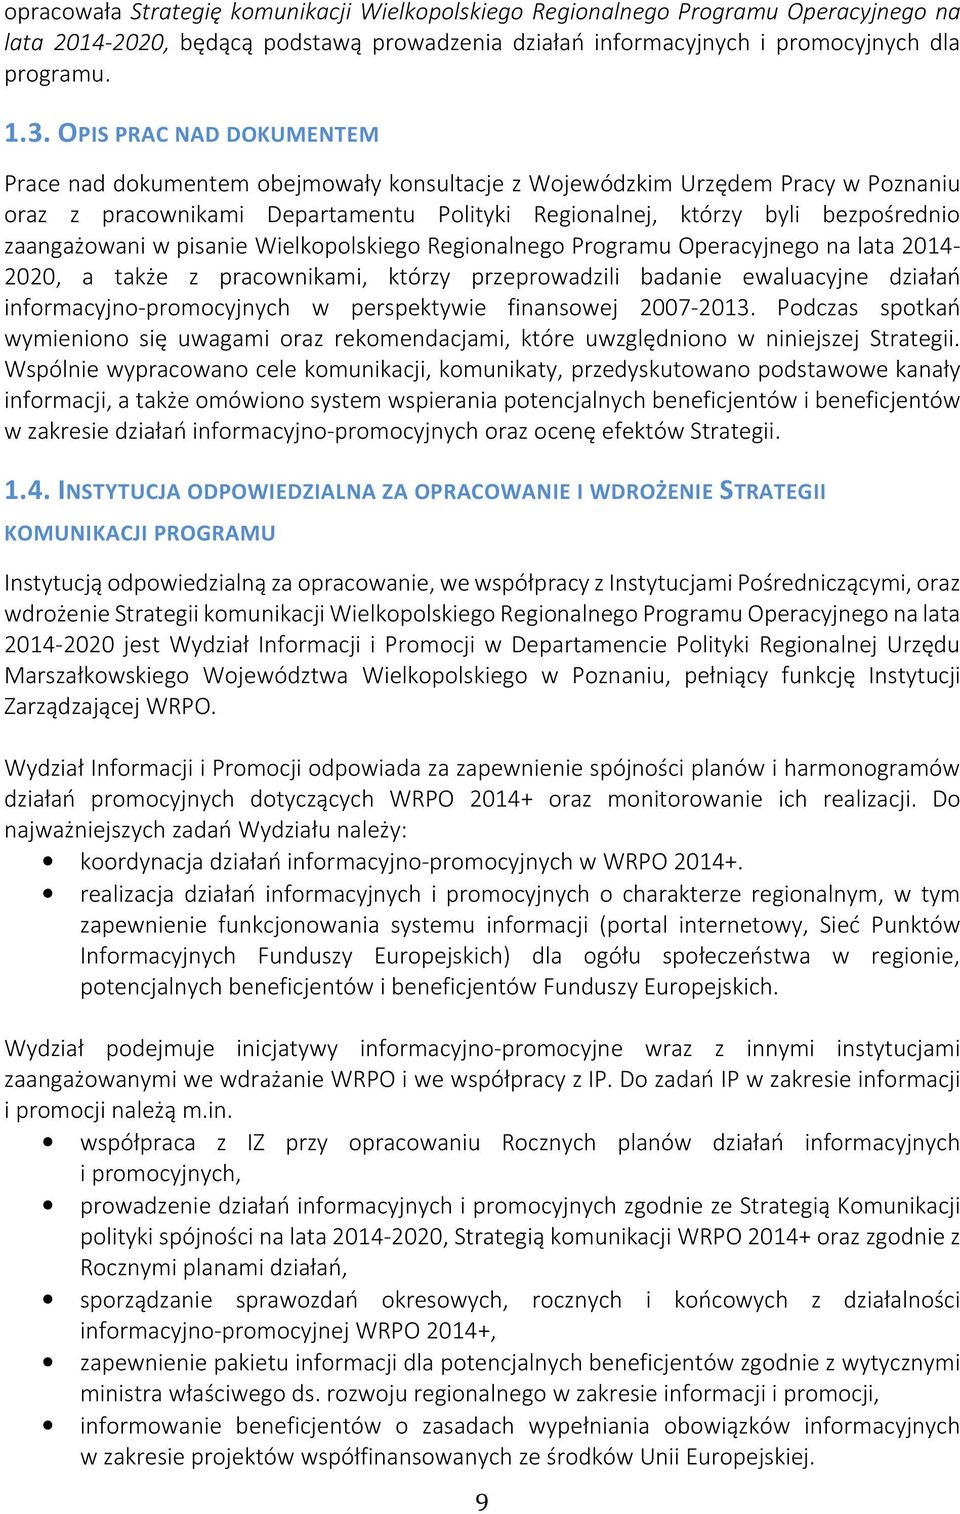 zaangażowani w pisanie Wielkopolskiego Regionalnego Programu Operacyjnego na lata 2014-2020, a także z pracownikami, którzy przeprowadzili badanie ewaluacyjne działań informacyjno-promocyjnych w